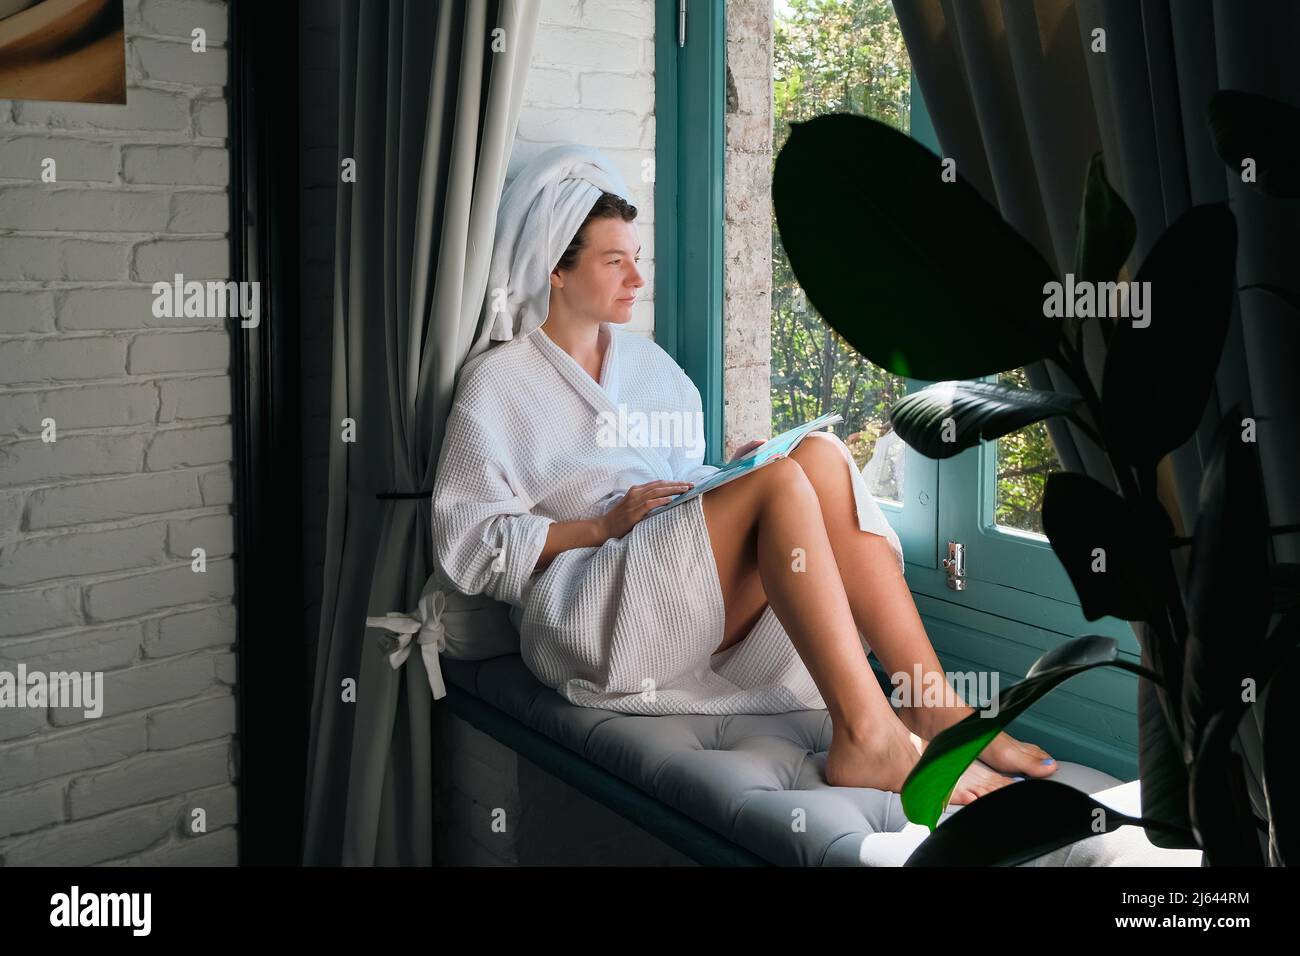 Entspannende Frau nach der Dusche auf dem Fensterbrett sitzend. Wellness, Spa, psychische Gesundheit und Wohlbefinden Konzept. Muttertag oder Frauentag. Stockfoto